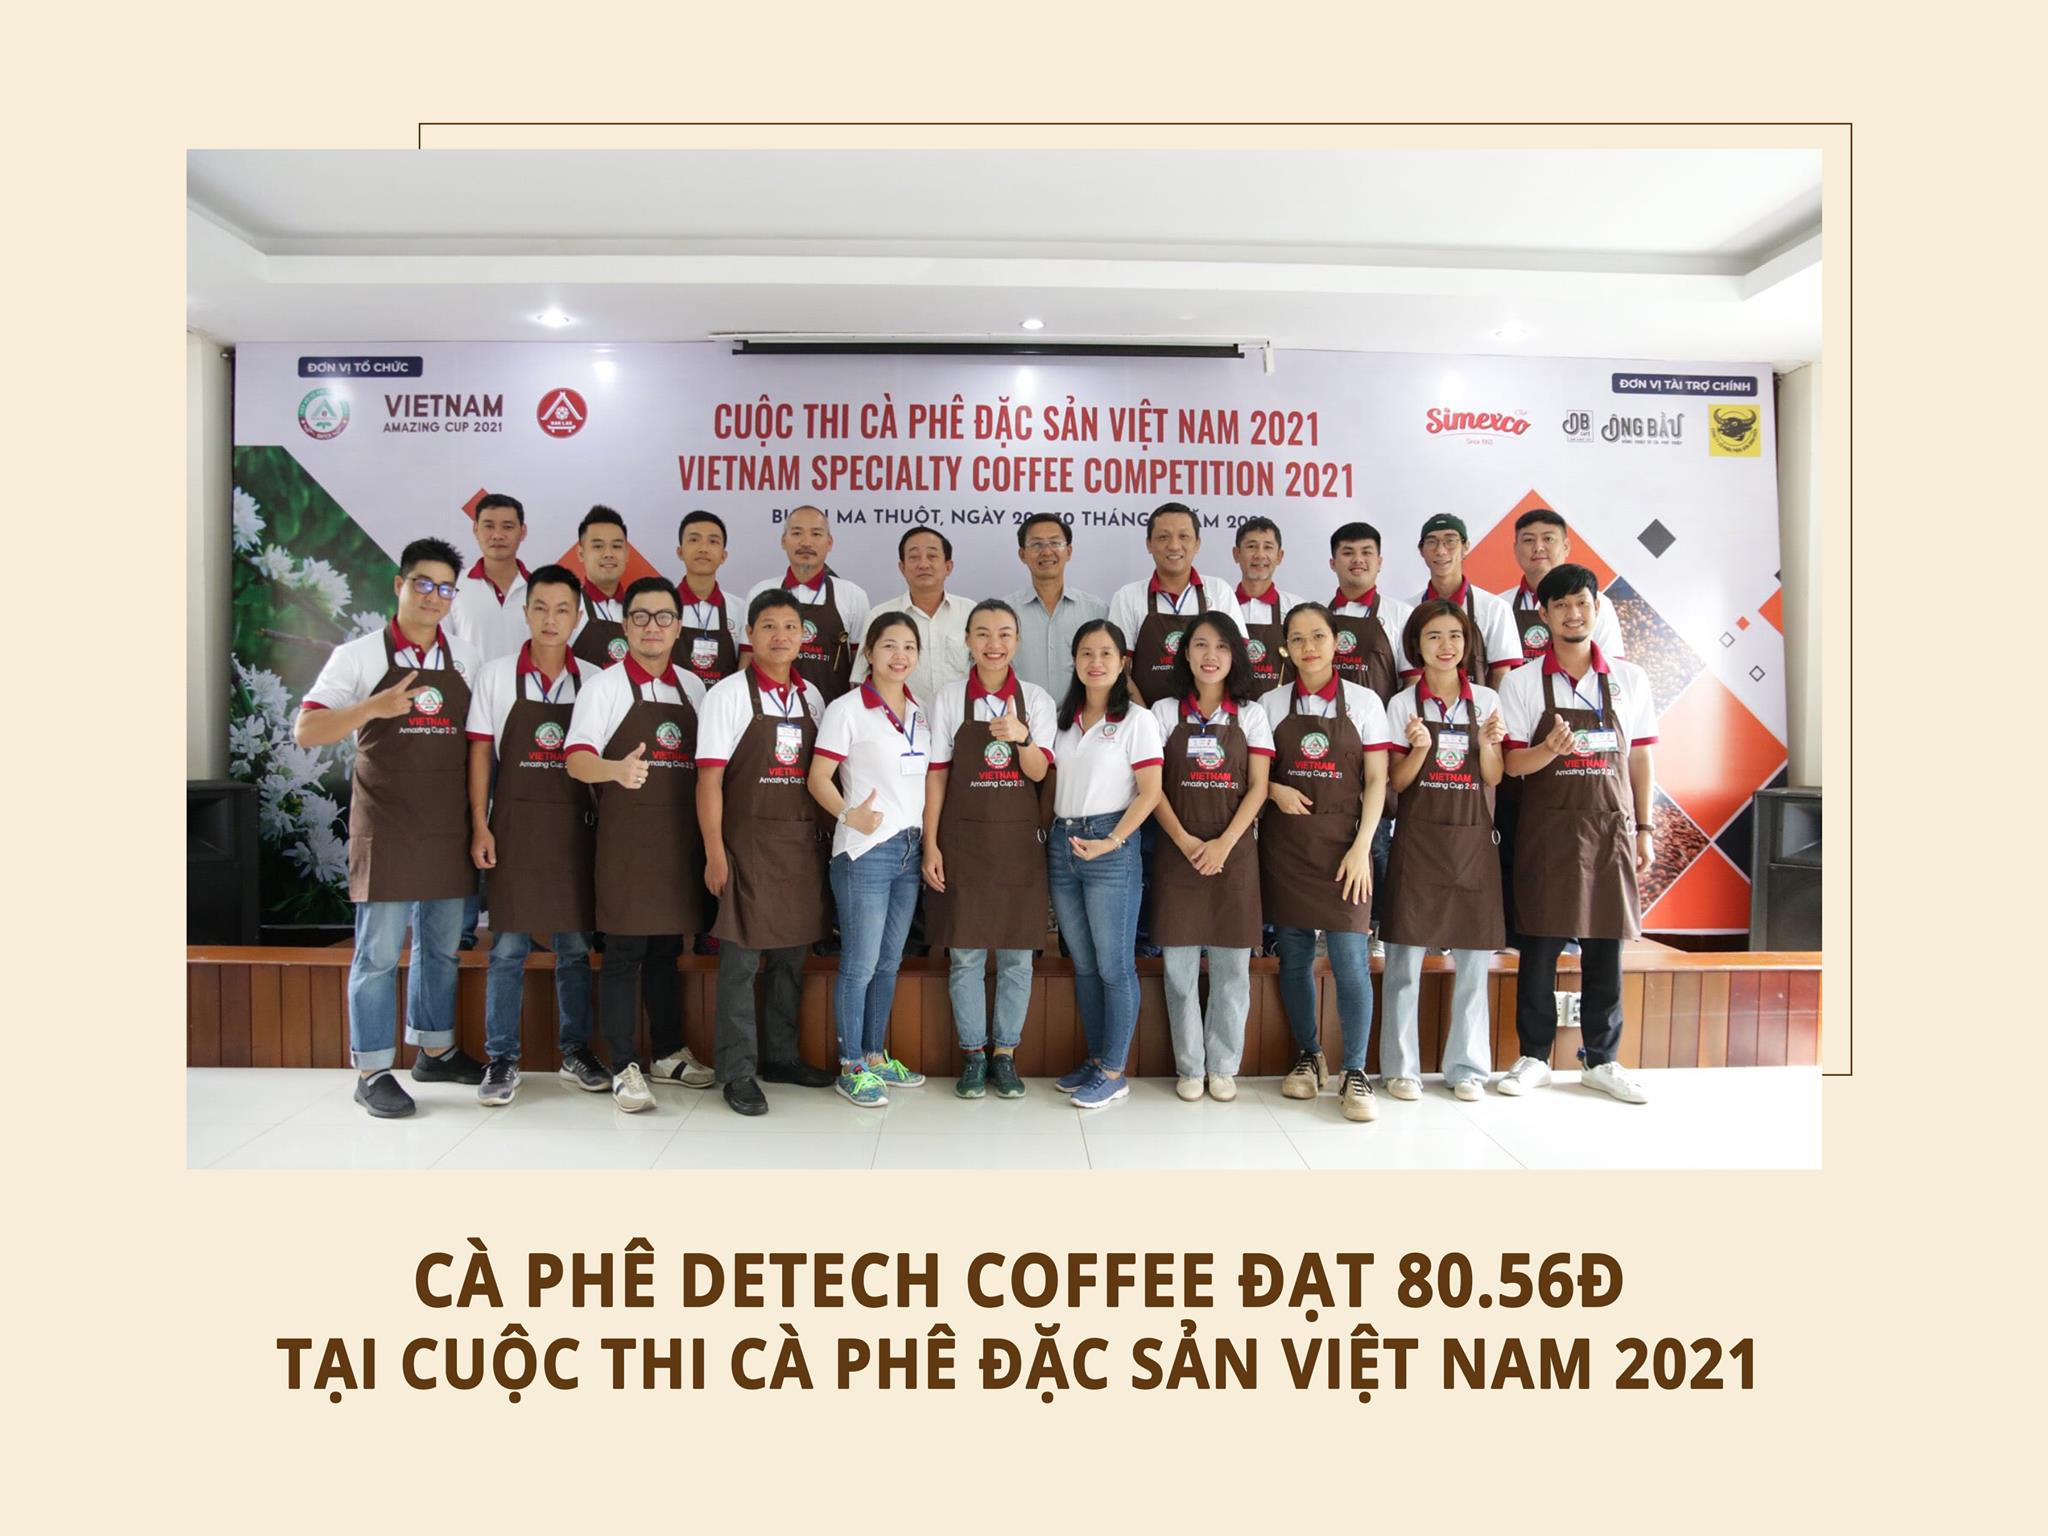 Cà phê Detech Coffee chính thức được công nhận là cà phê đặc sản